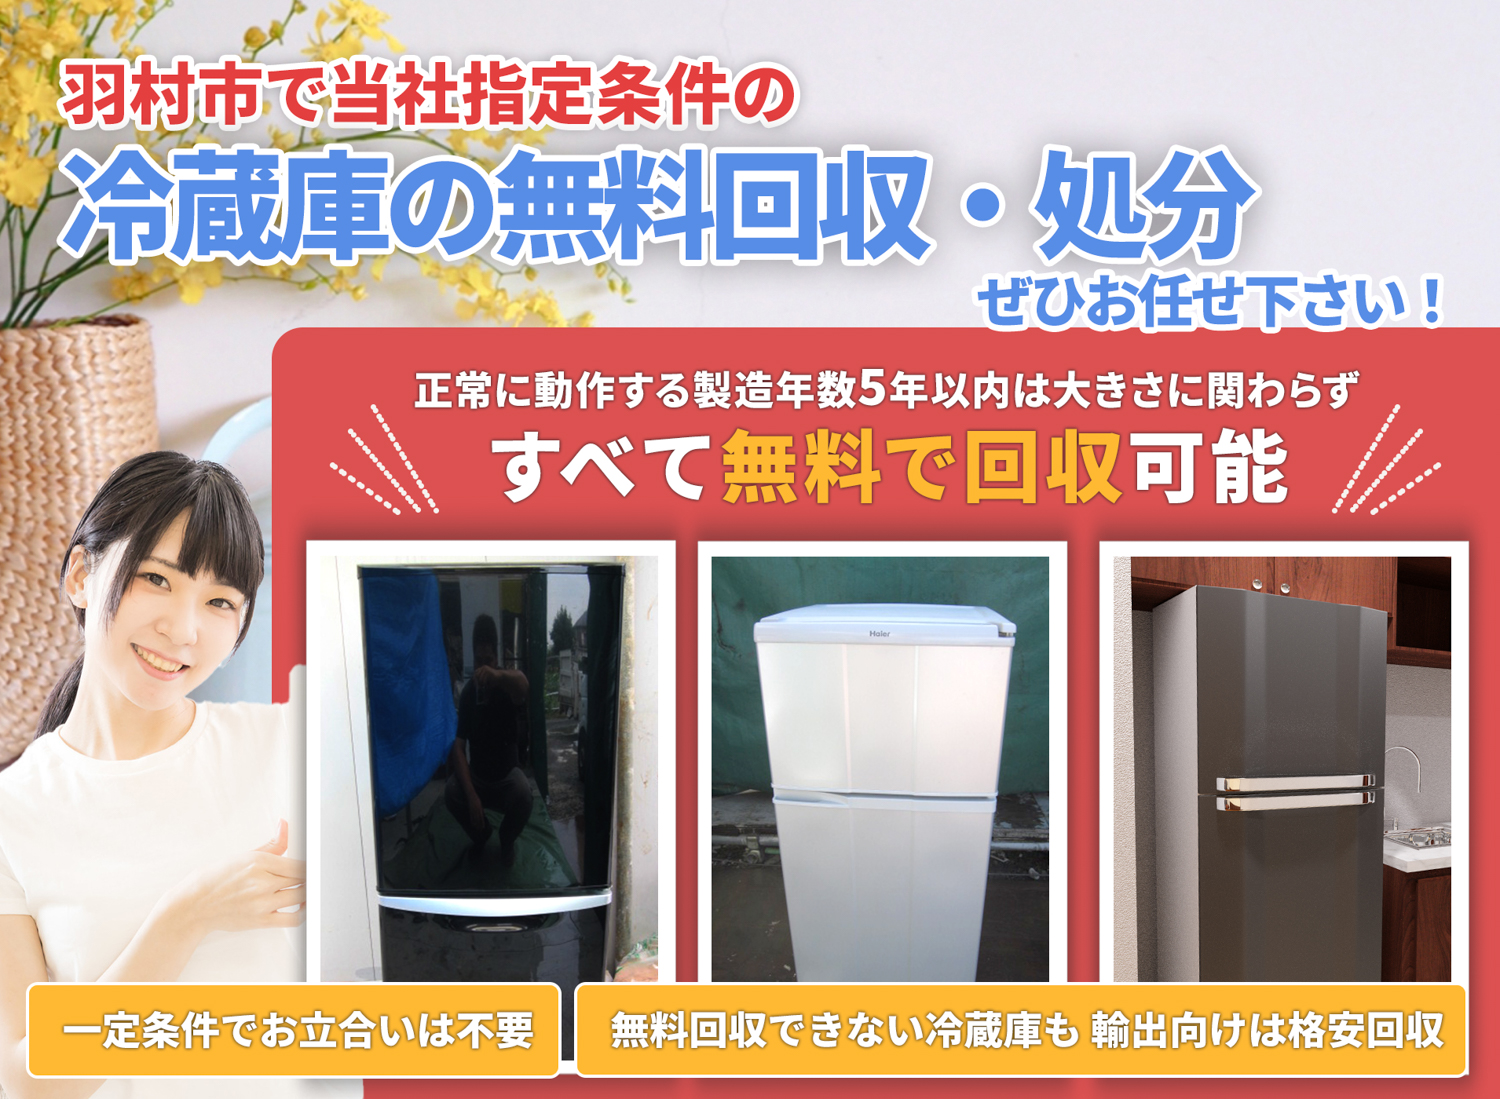 羽村市のサービスで地域一番を目指す冷蔵庫無料回収処分隊の冷蔵庫無料回収サービス